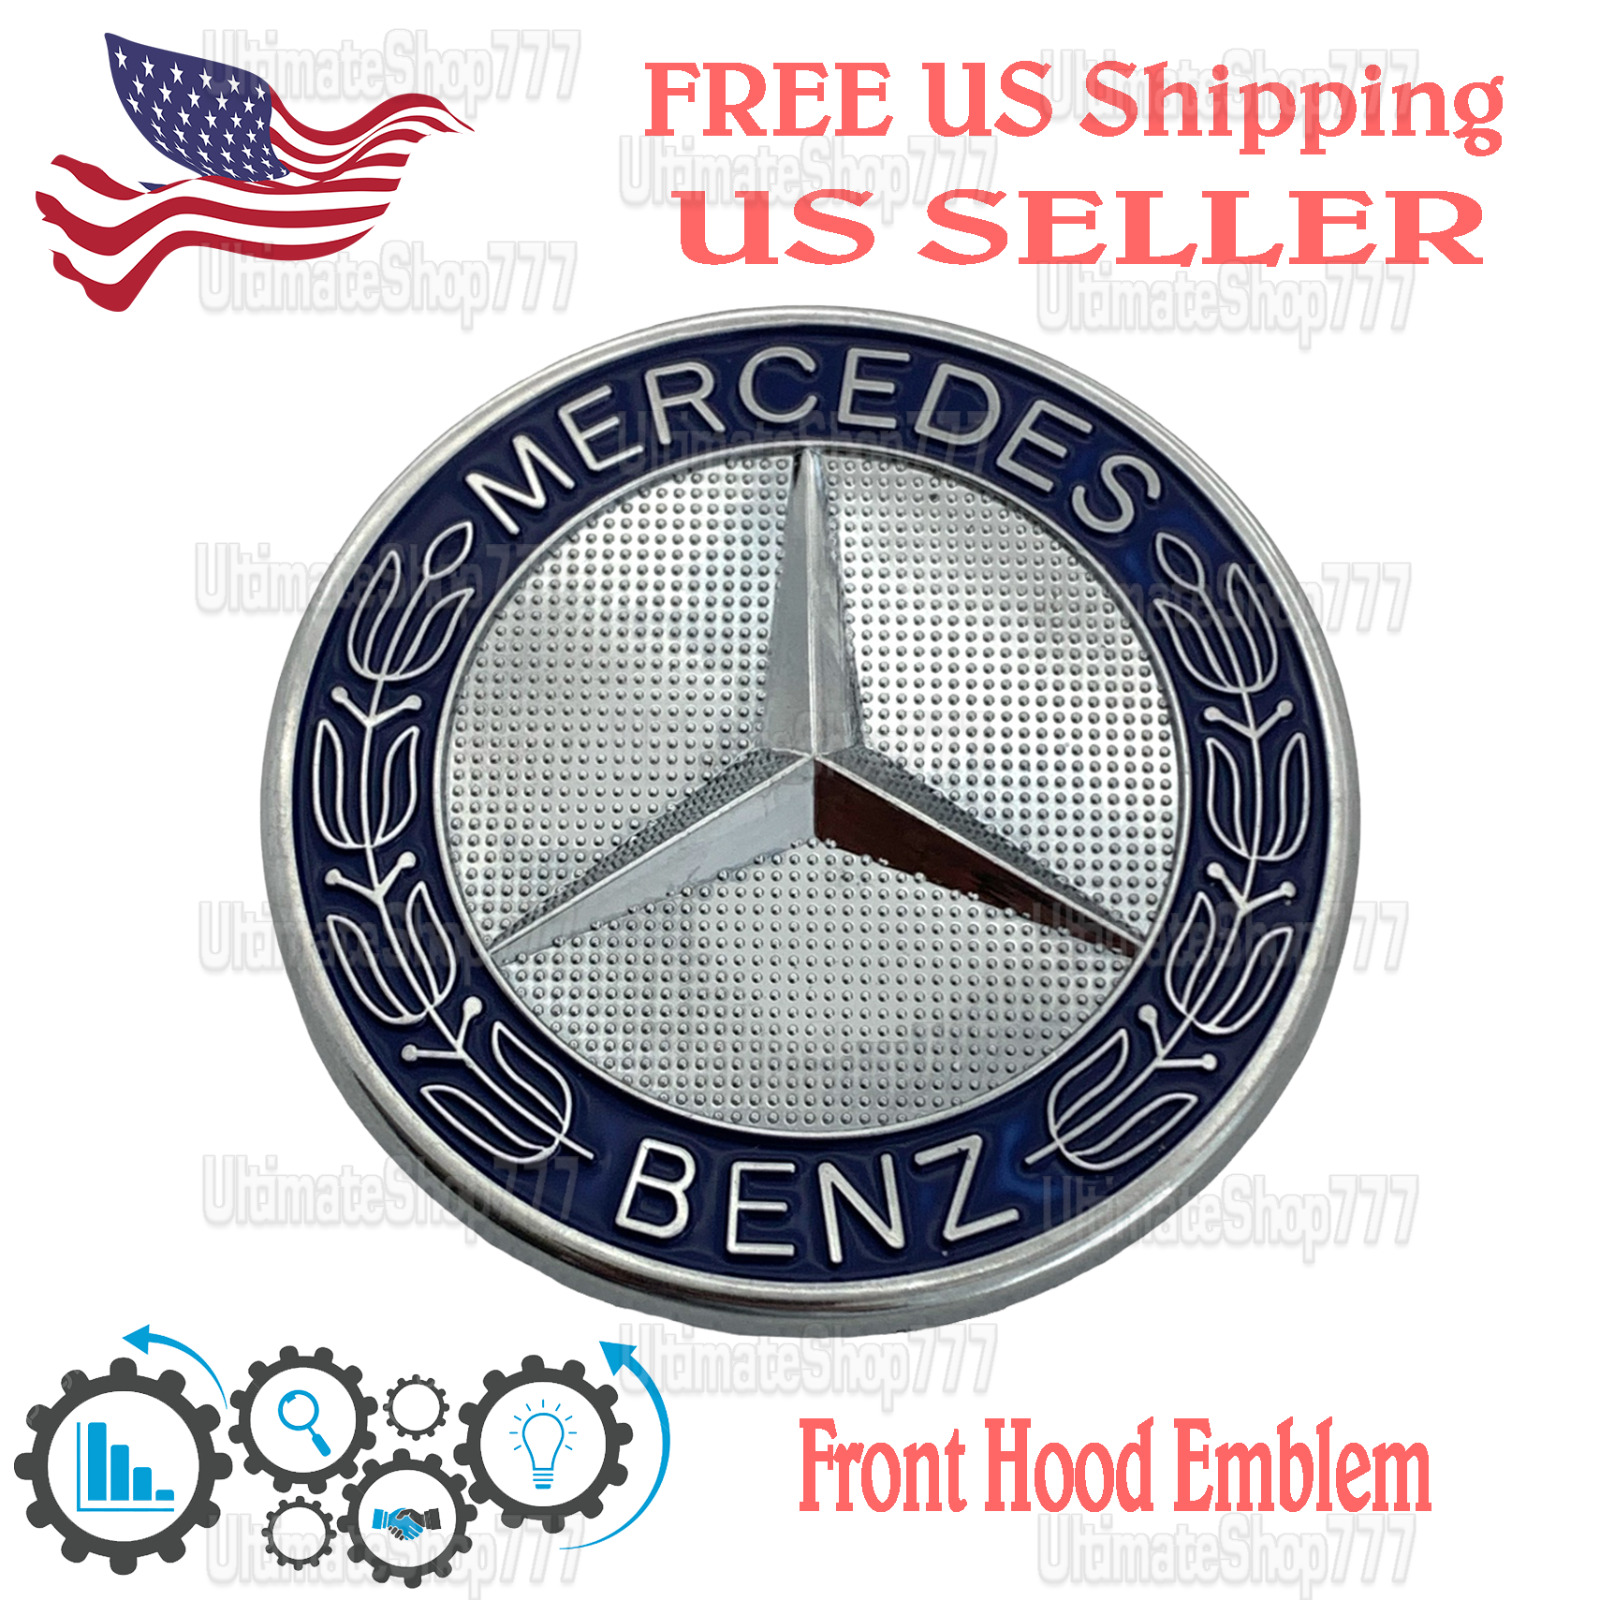 Front Hood Emblem Star For Mercedes-Benz Laurel Wreath Badge C E Class